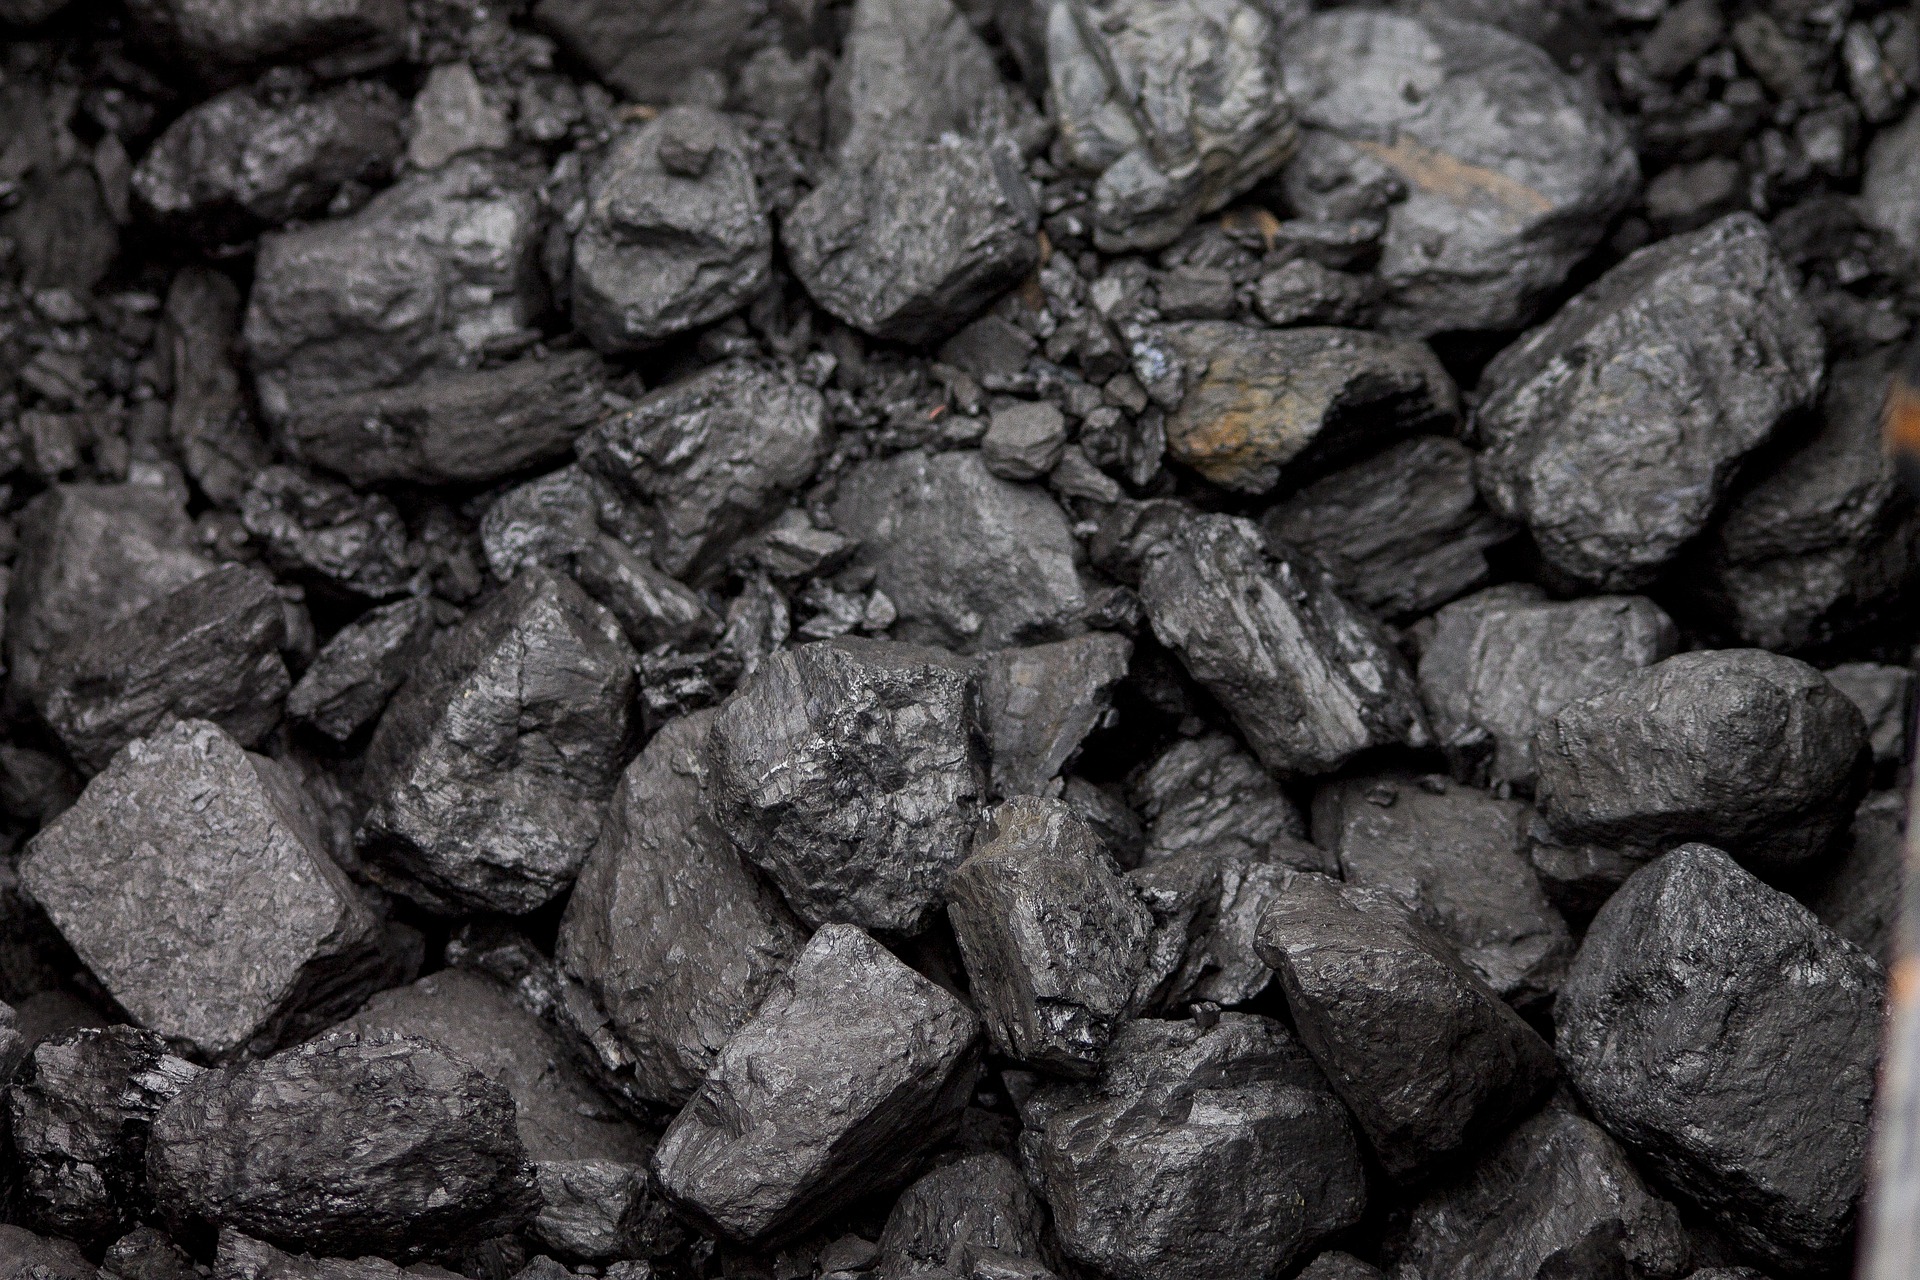 Umowa na sprzedaż węgla z PGE Paliwa podpisana